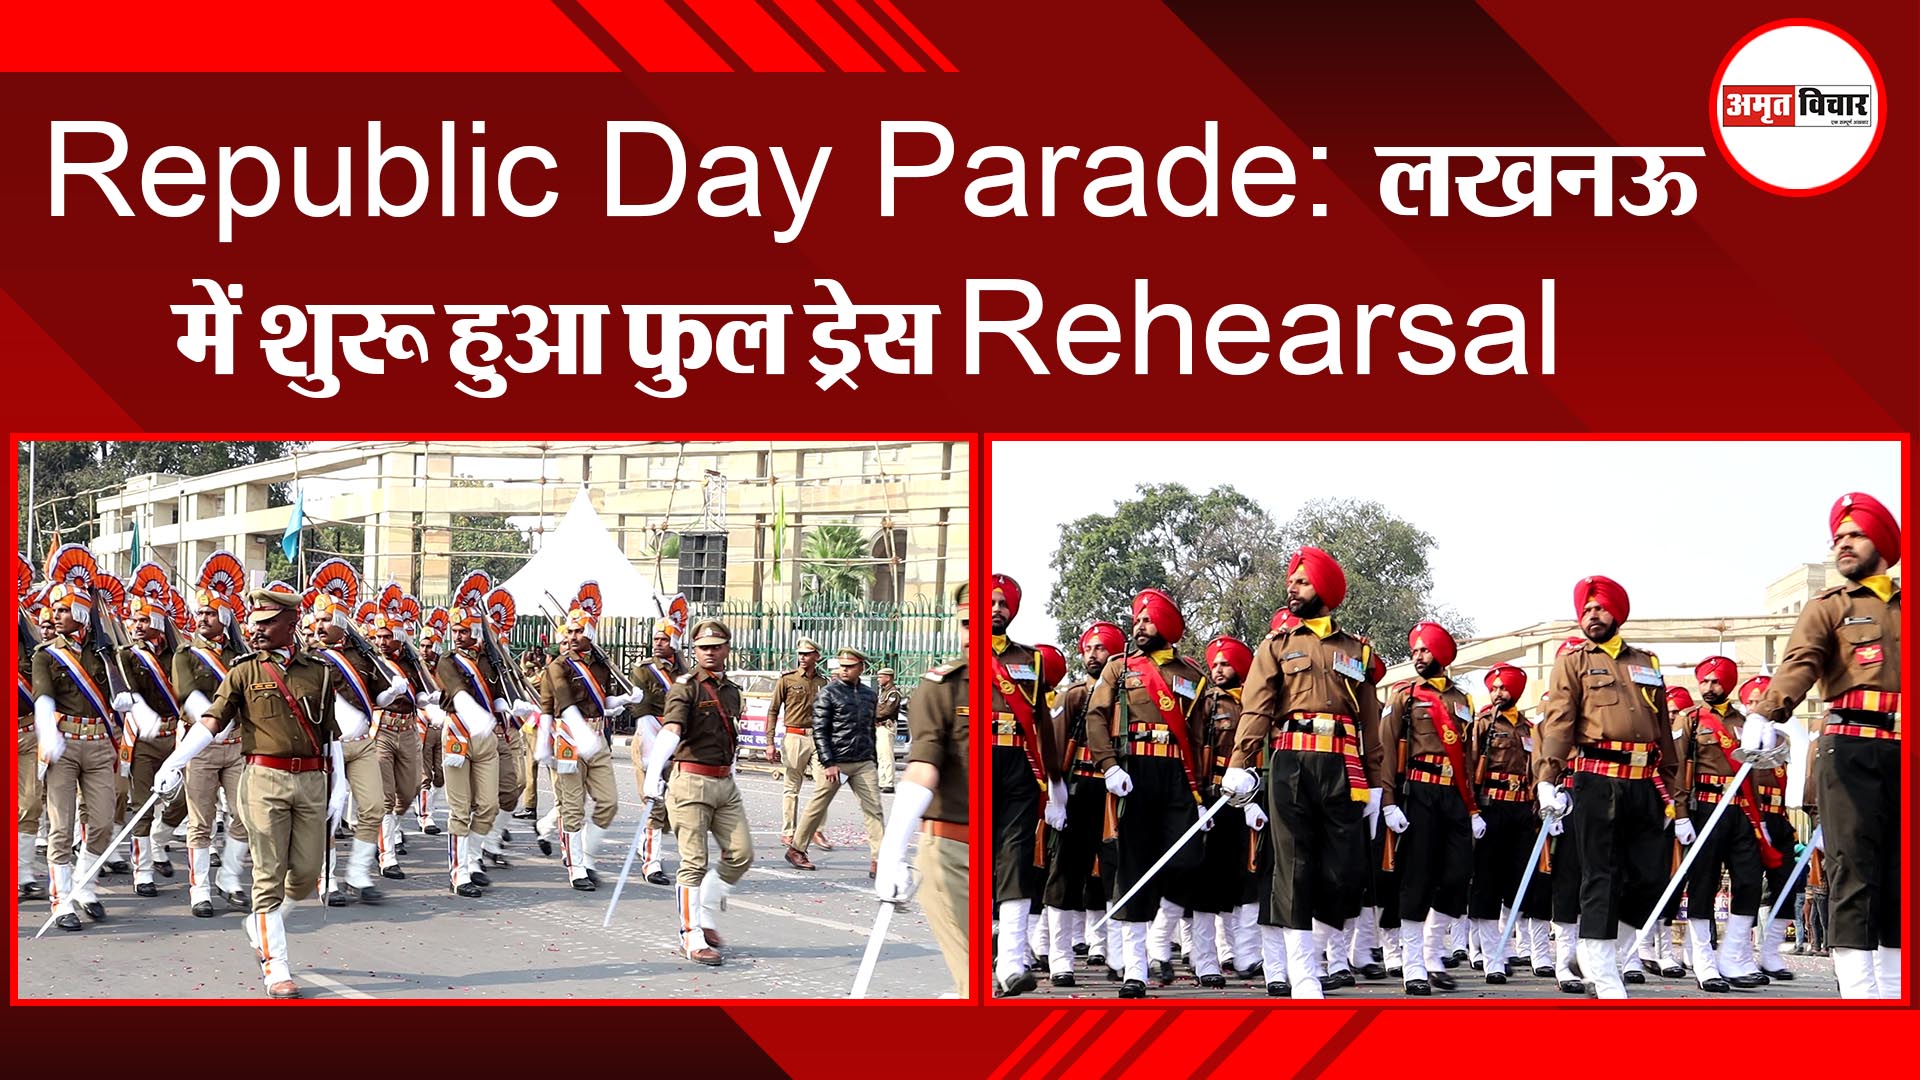 Republic Day Parade : लखनऊ में शुरू हुआ फुल ड्रेस Rehearsal